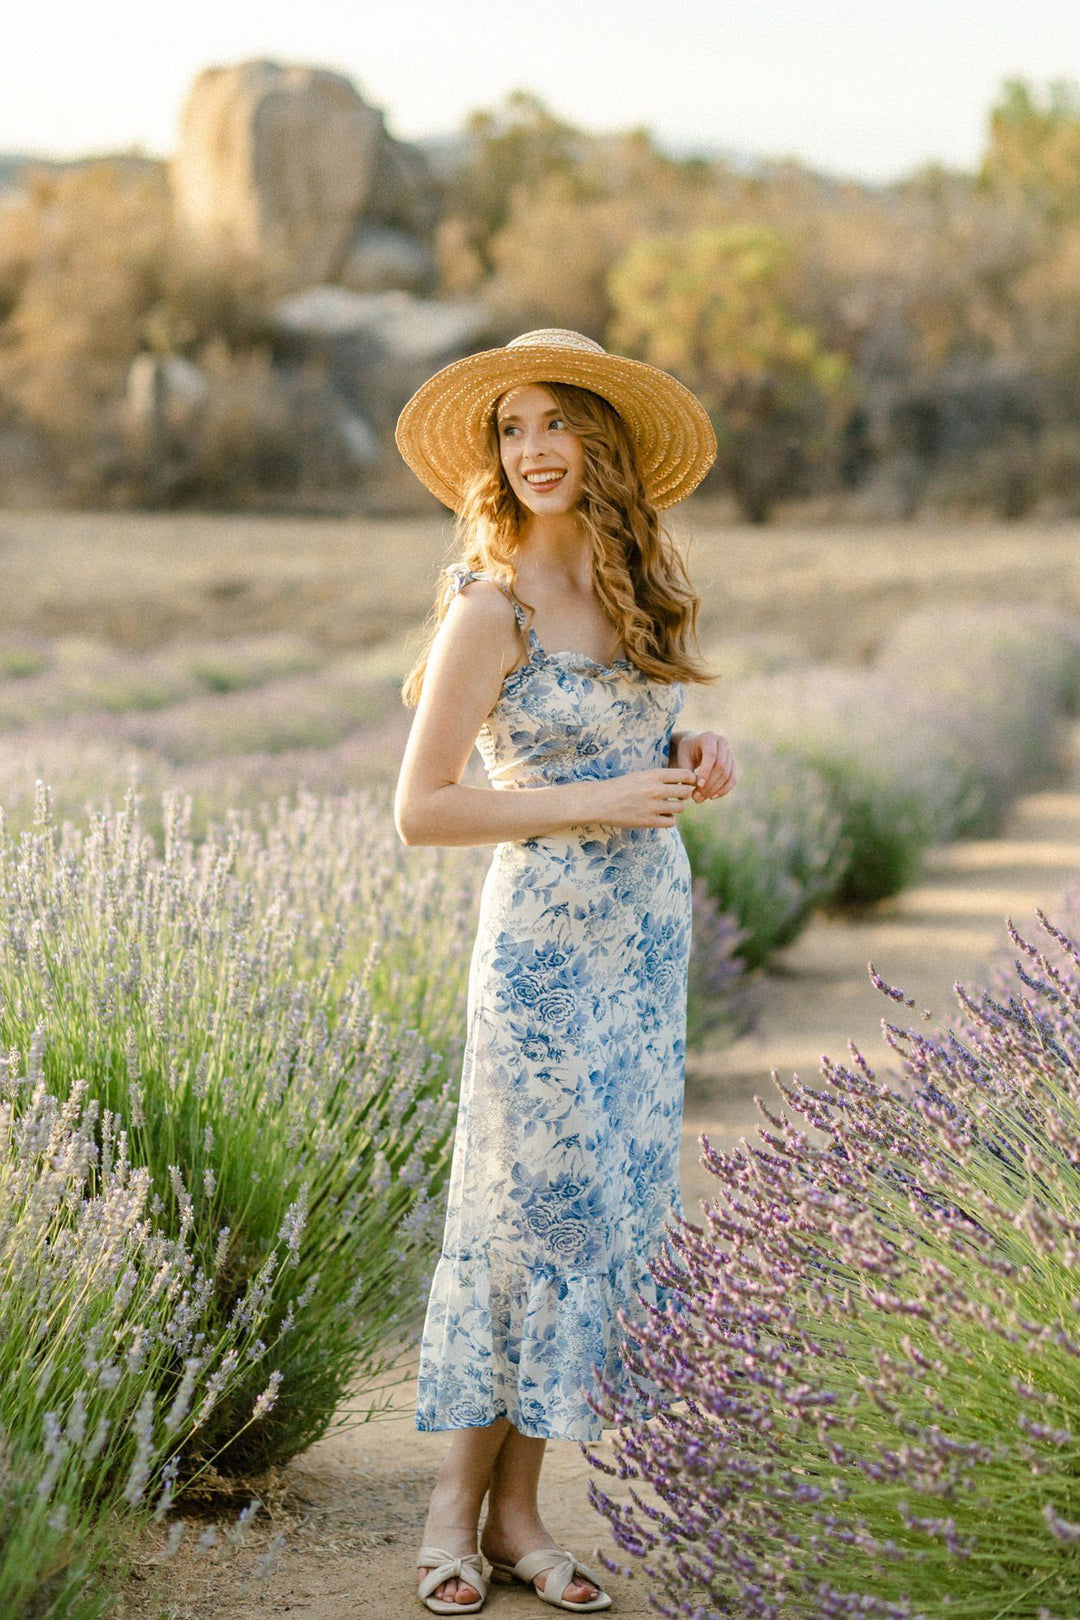 Midi Dress with Applique Details - Dana - Morning Lavender Online Boutique